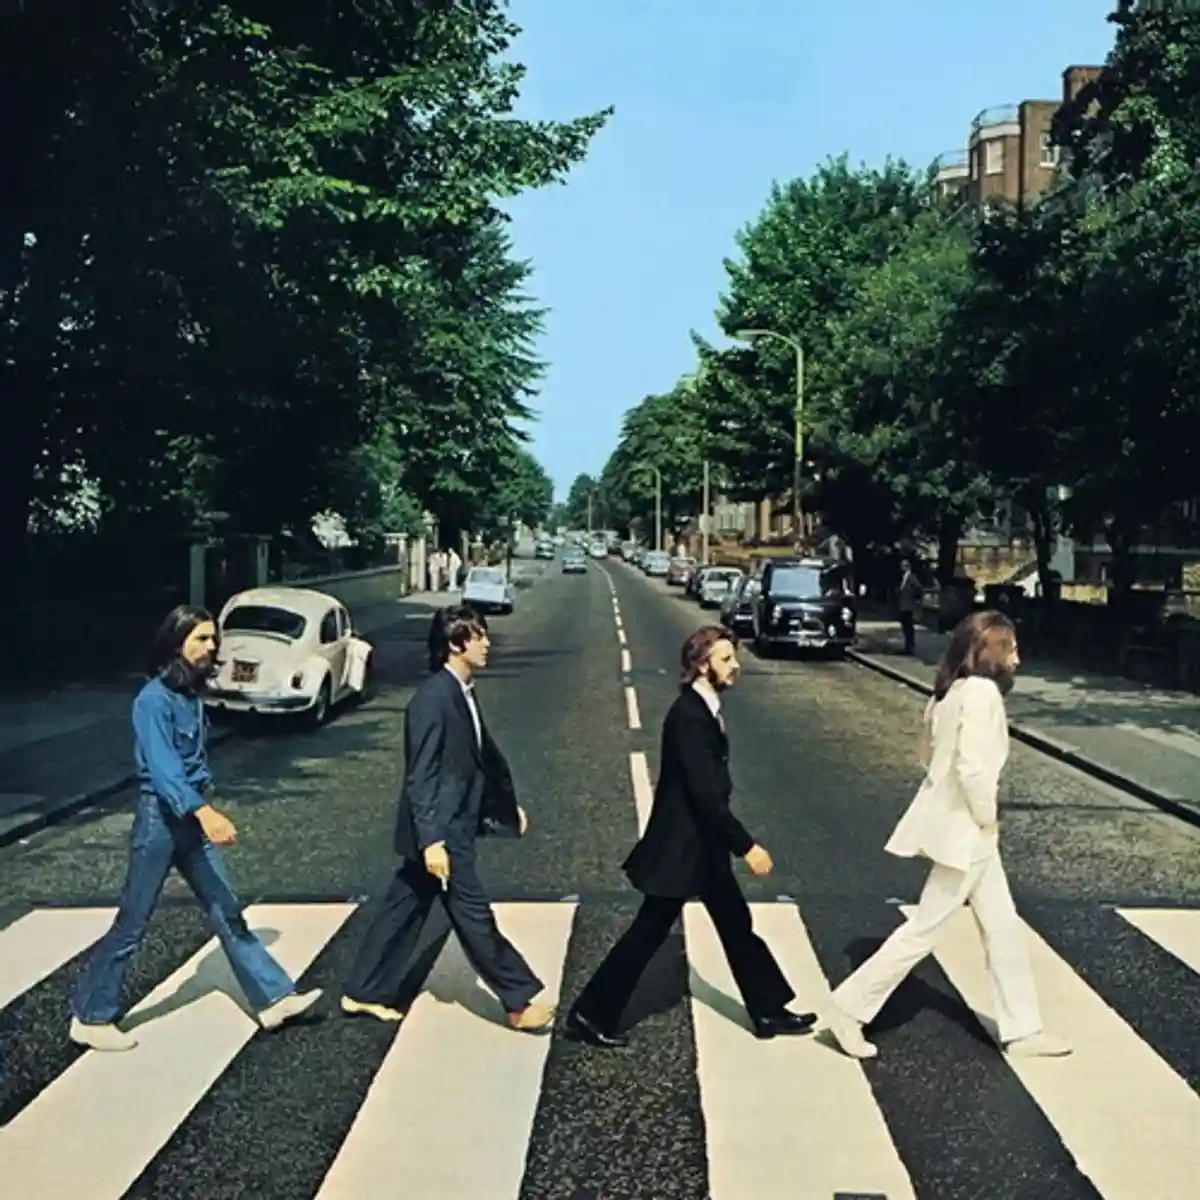 Обложка альбома The Beatles «Abbey Road». В этом изображении поклонники часто пытались найти скрытый смысл. Например, то, что битлы на фото уходят от студии, расценивалось как знак грядущего распада группы. Фото: Apple Records